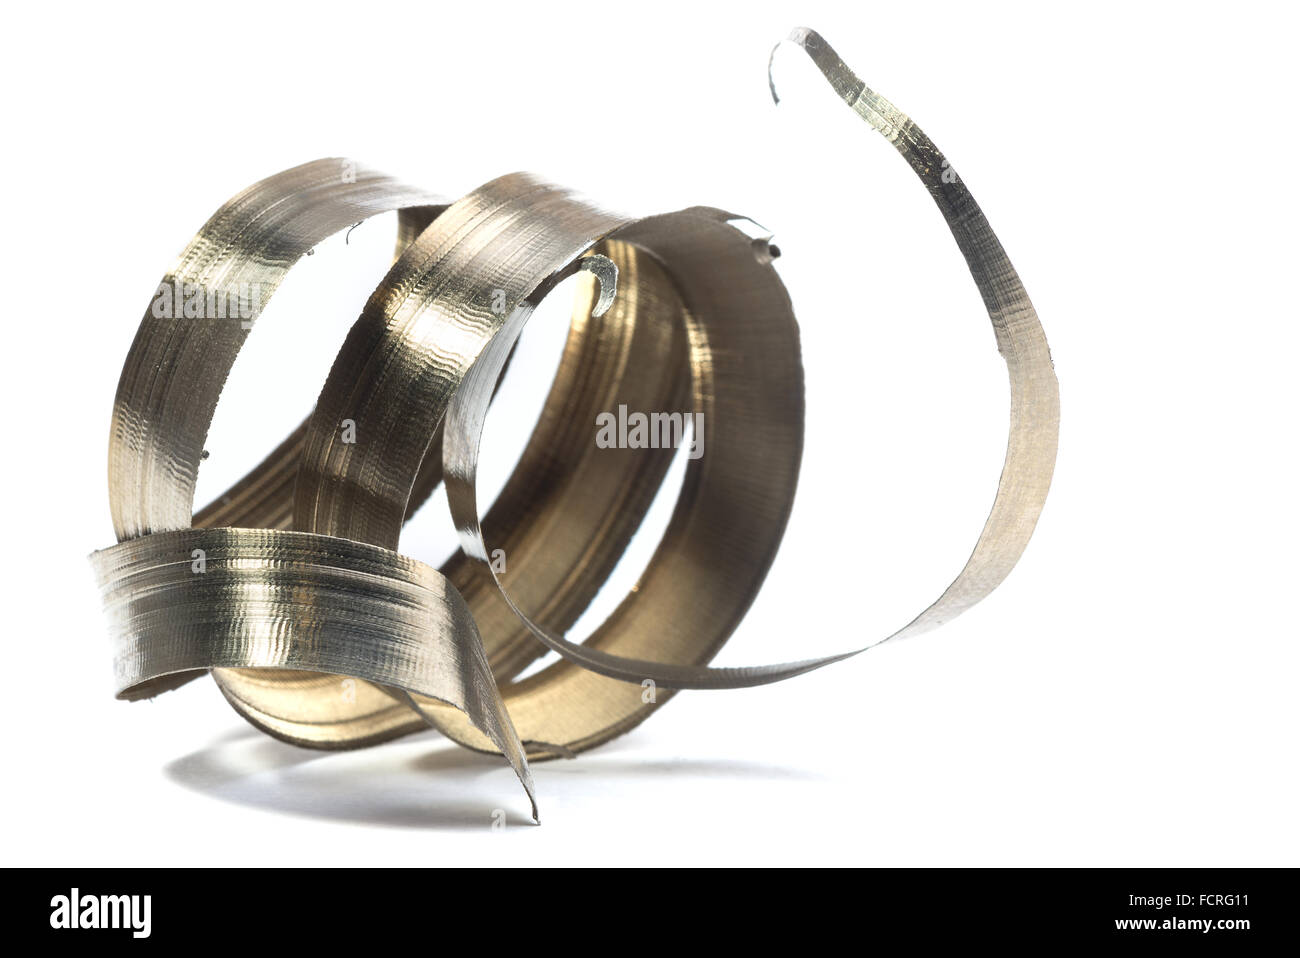 Spirale metallica trucioli dall'utensile da tornio Foto Stock